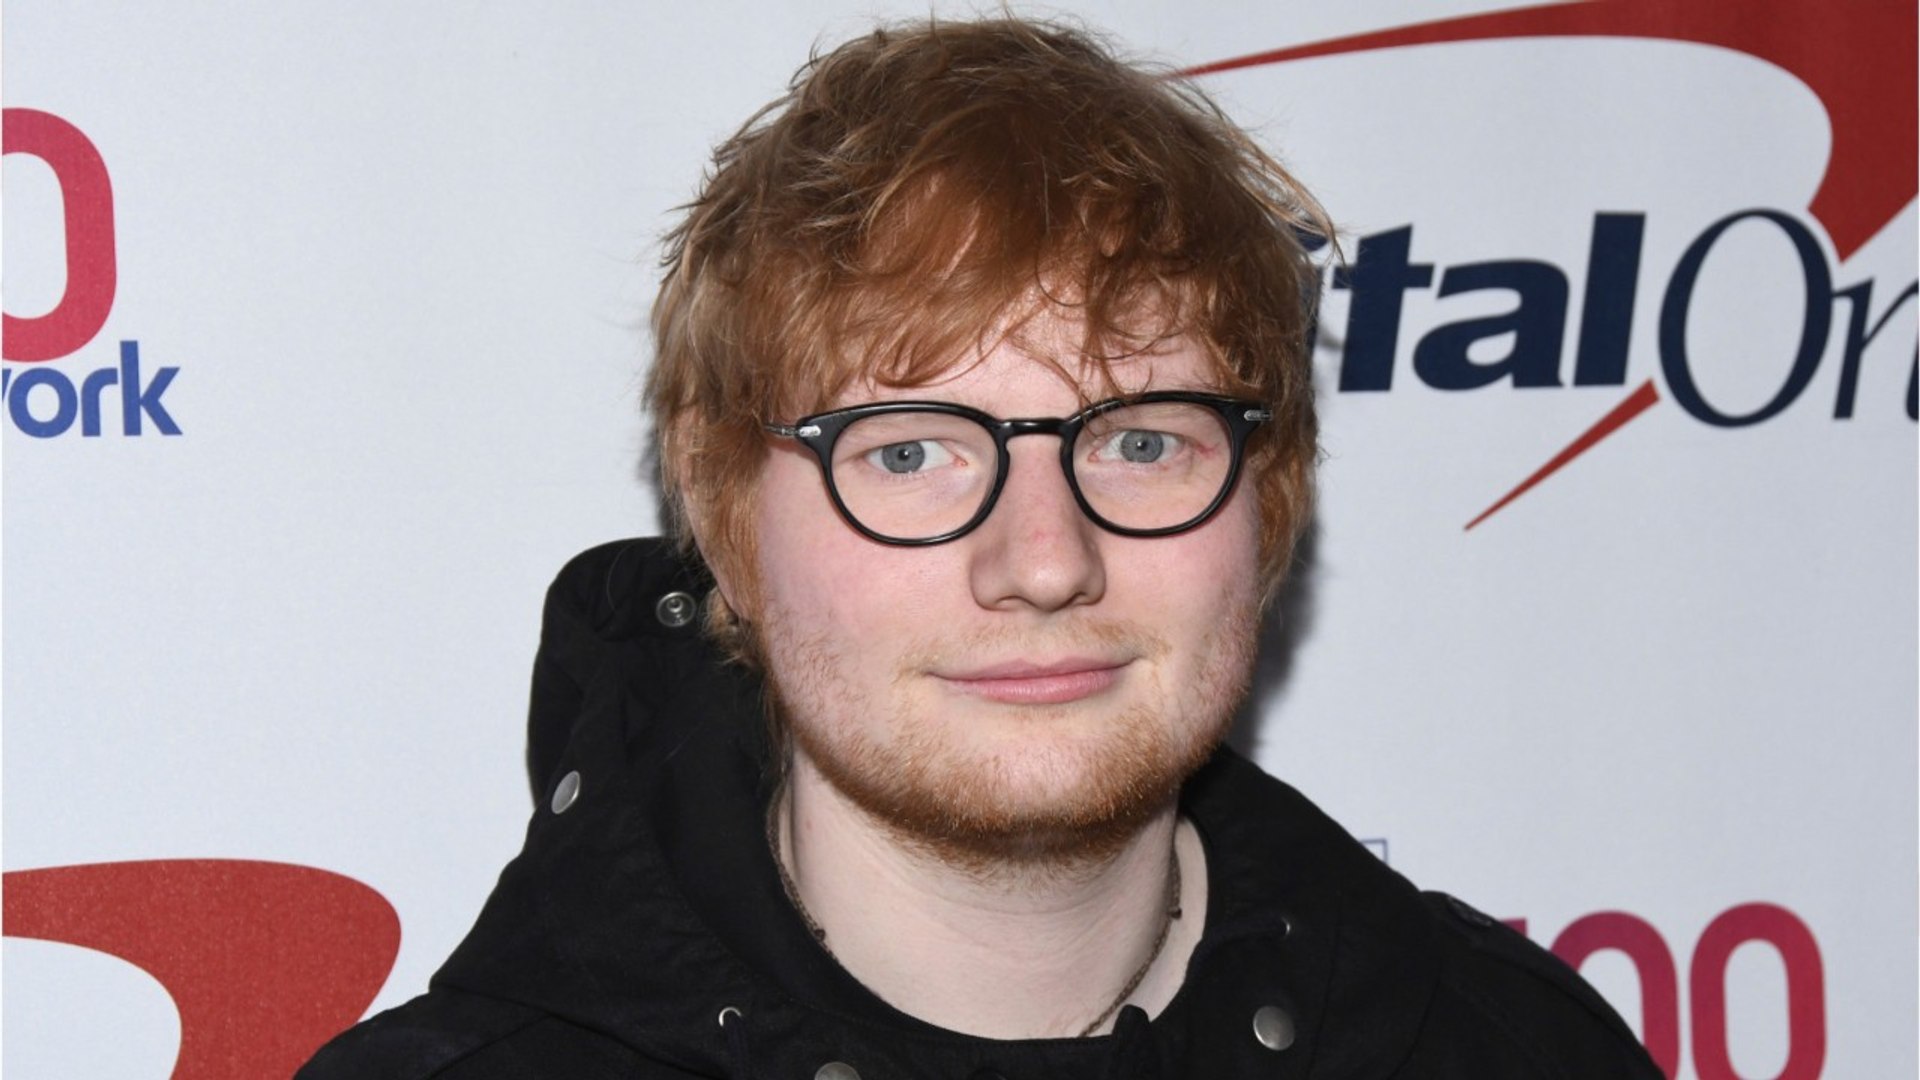 Ed Sheeran Is The Best-Selling Global Artist Of 2017